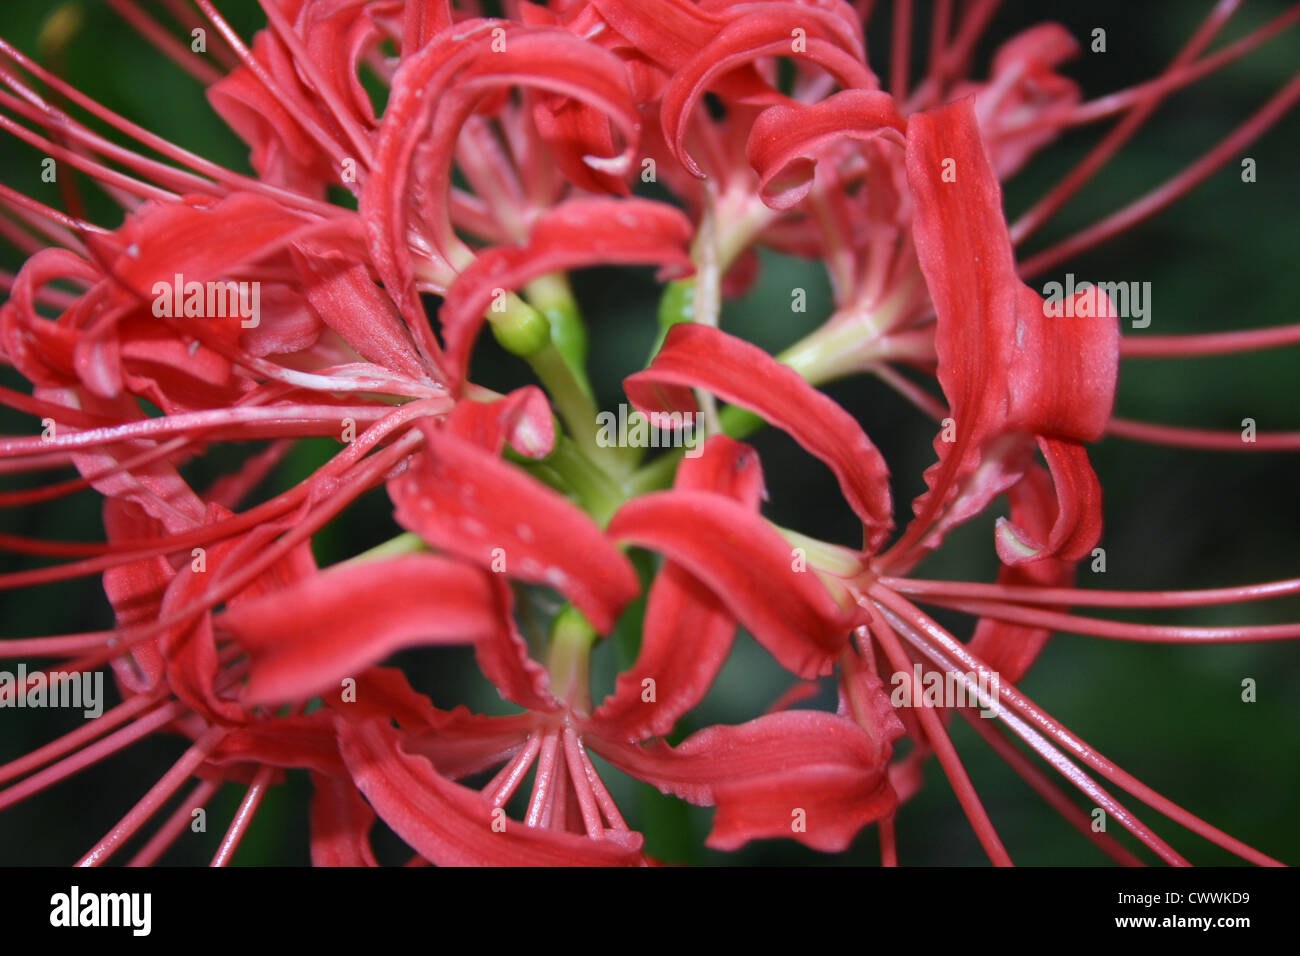 Rote Spinne Lilie Blume Bild Kunstdruck Farbe rot, das fotografische Bild botanische Blumen Drucke Stockfoto